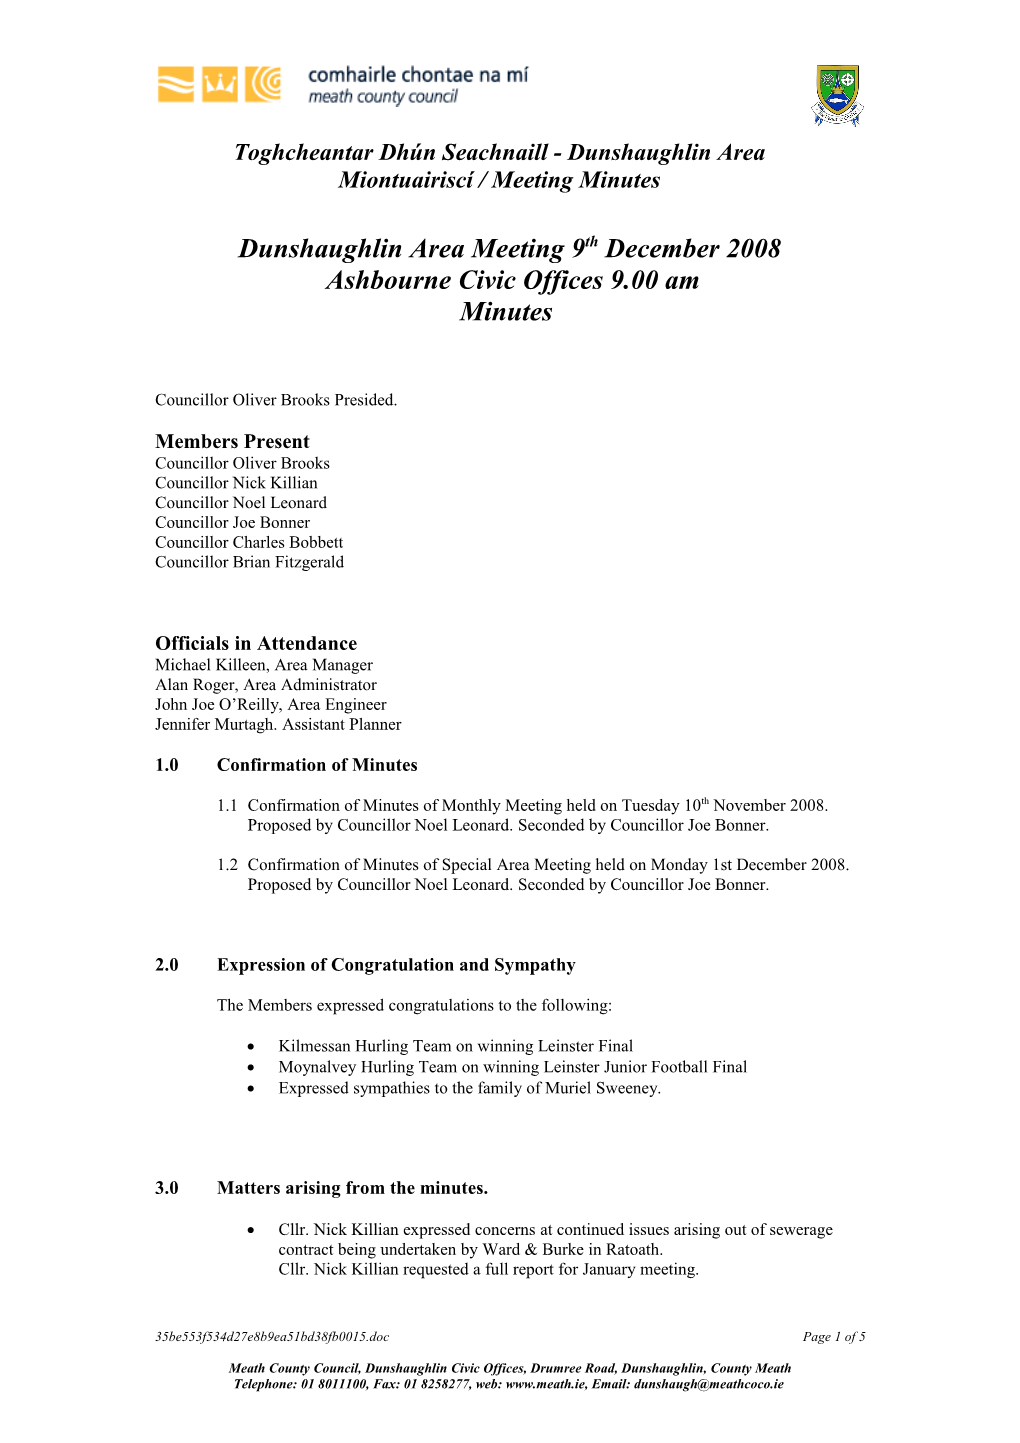 Dunshaughlin Area Meeting 12Th November 2007